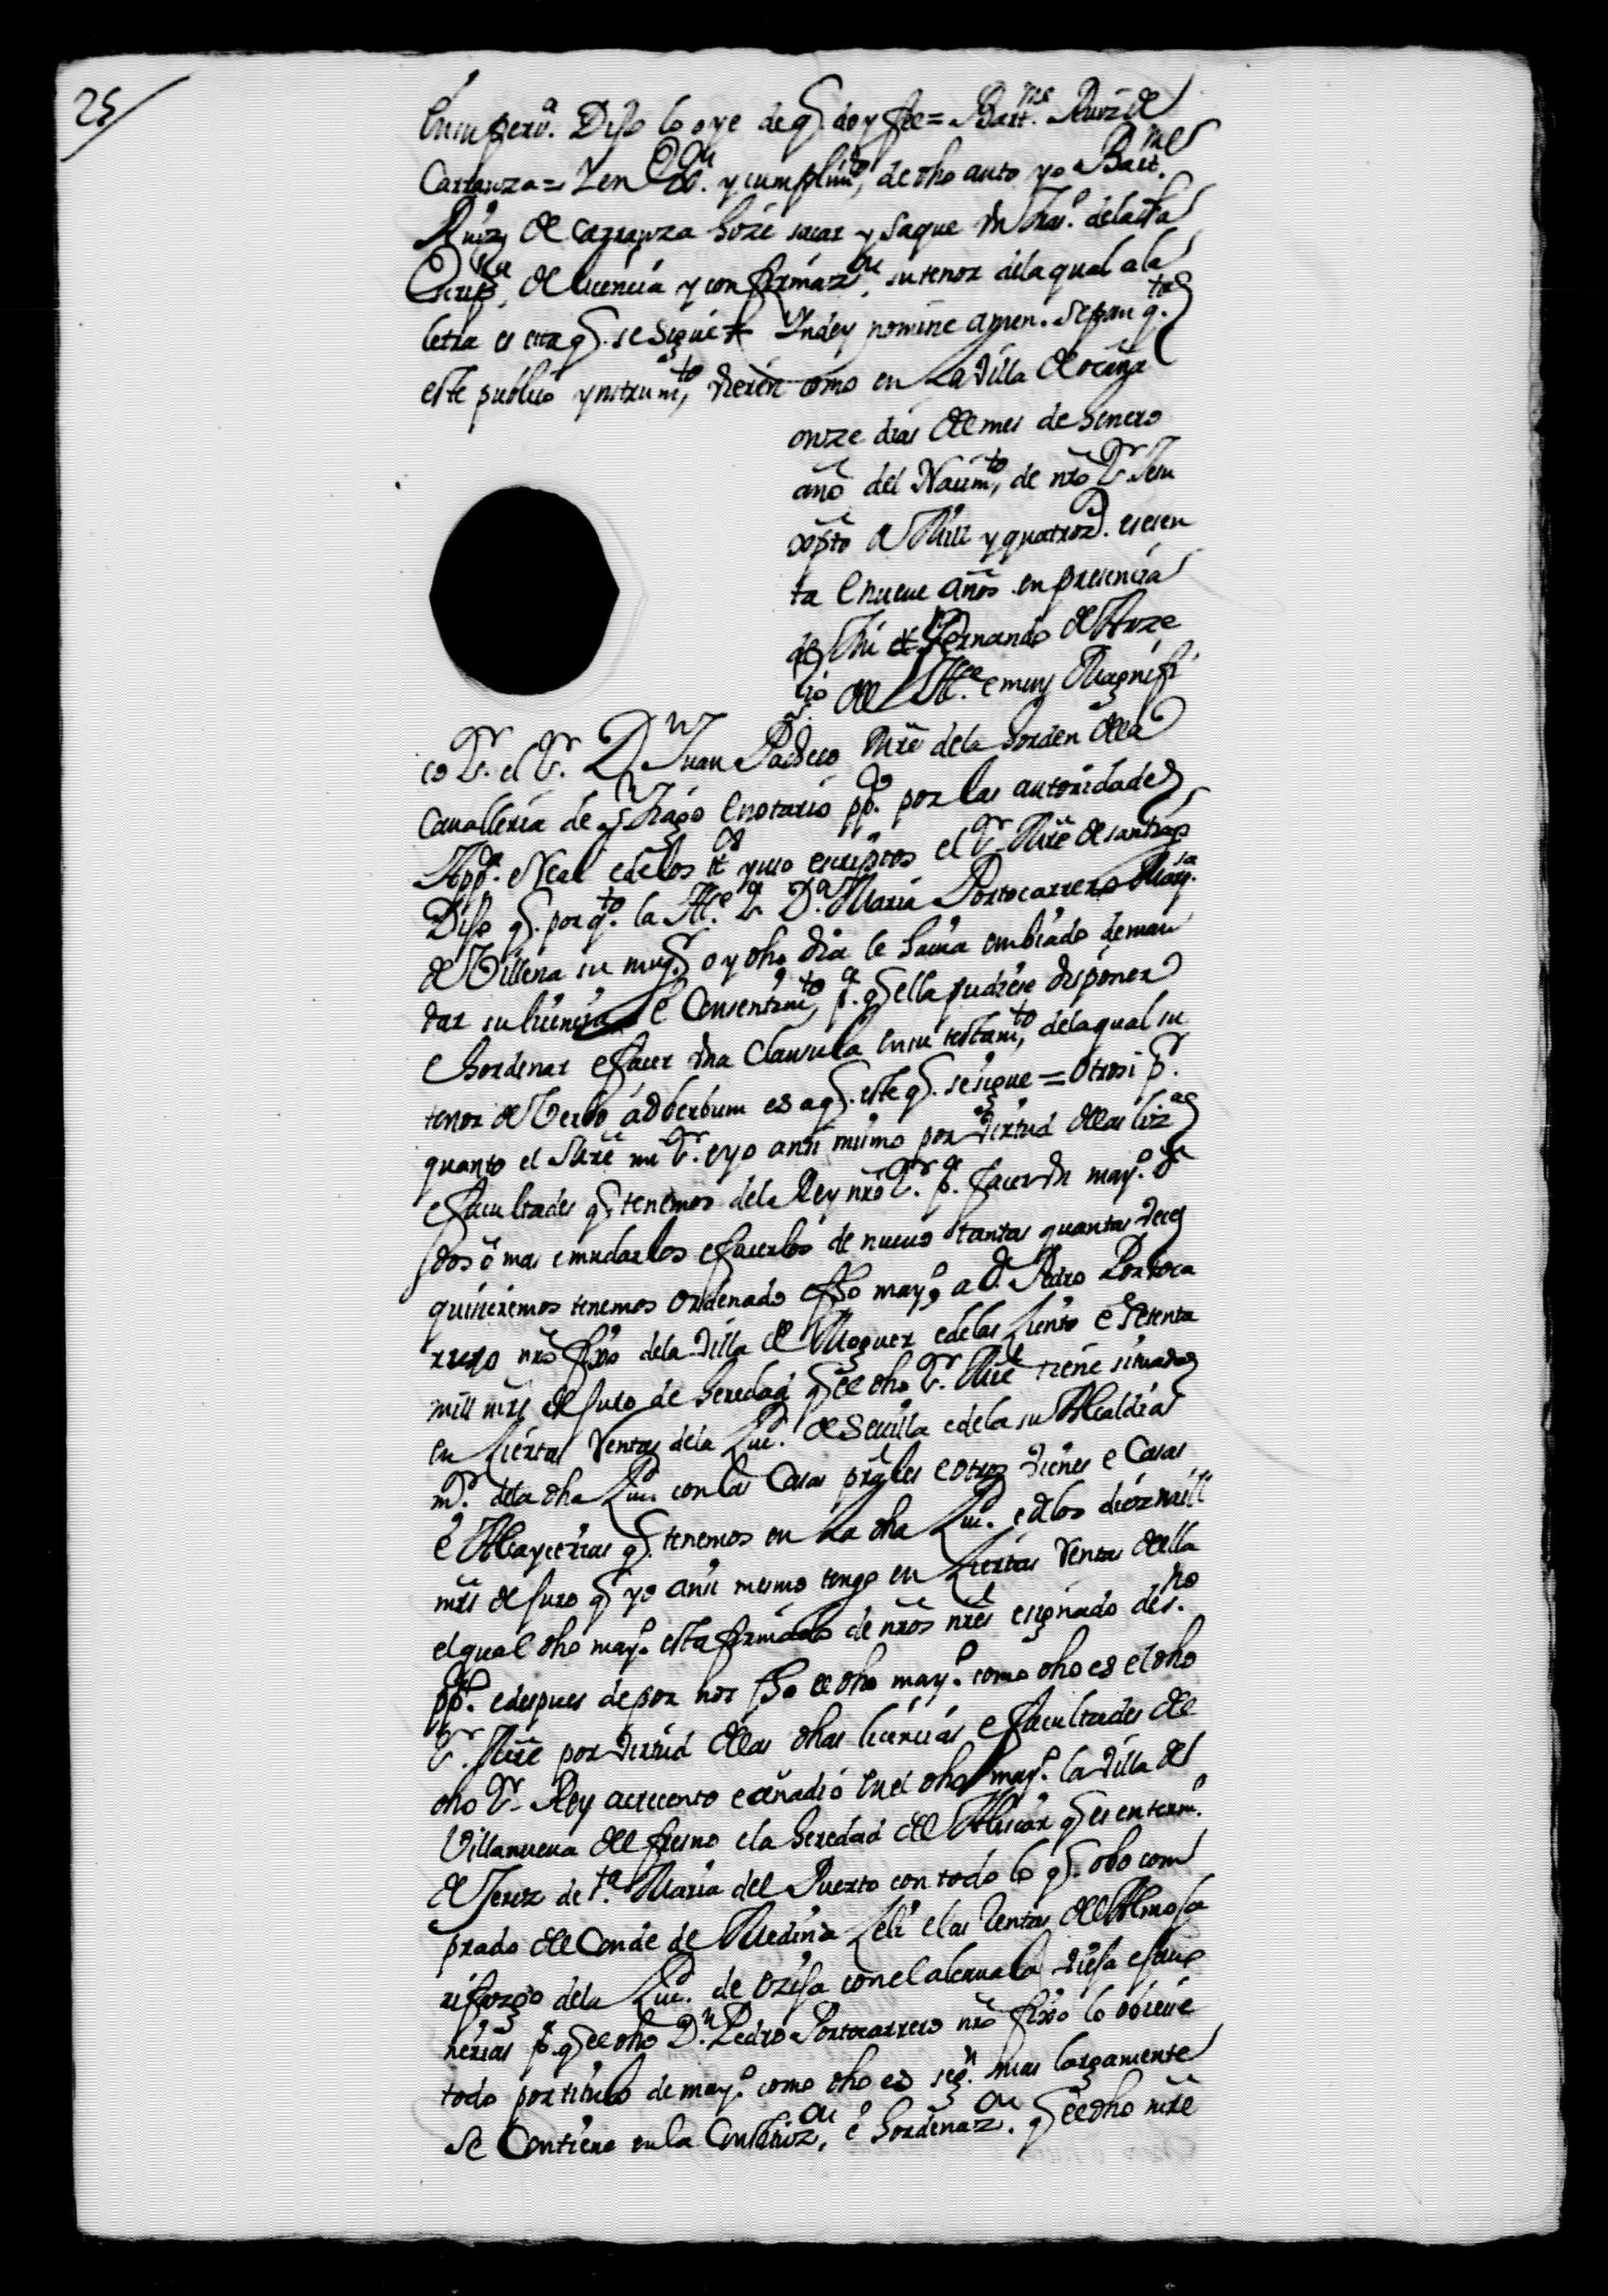 Traslados de documentos relativos a la fundación de mayorazgos, realizados por instancia de la Condesa de Montealegre.